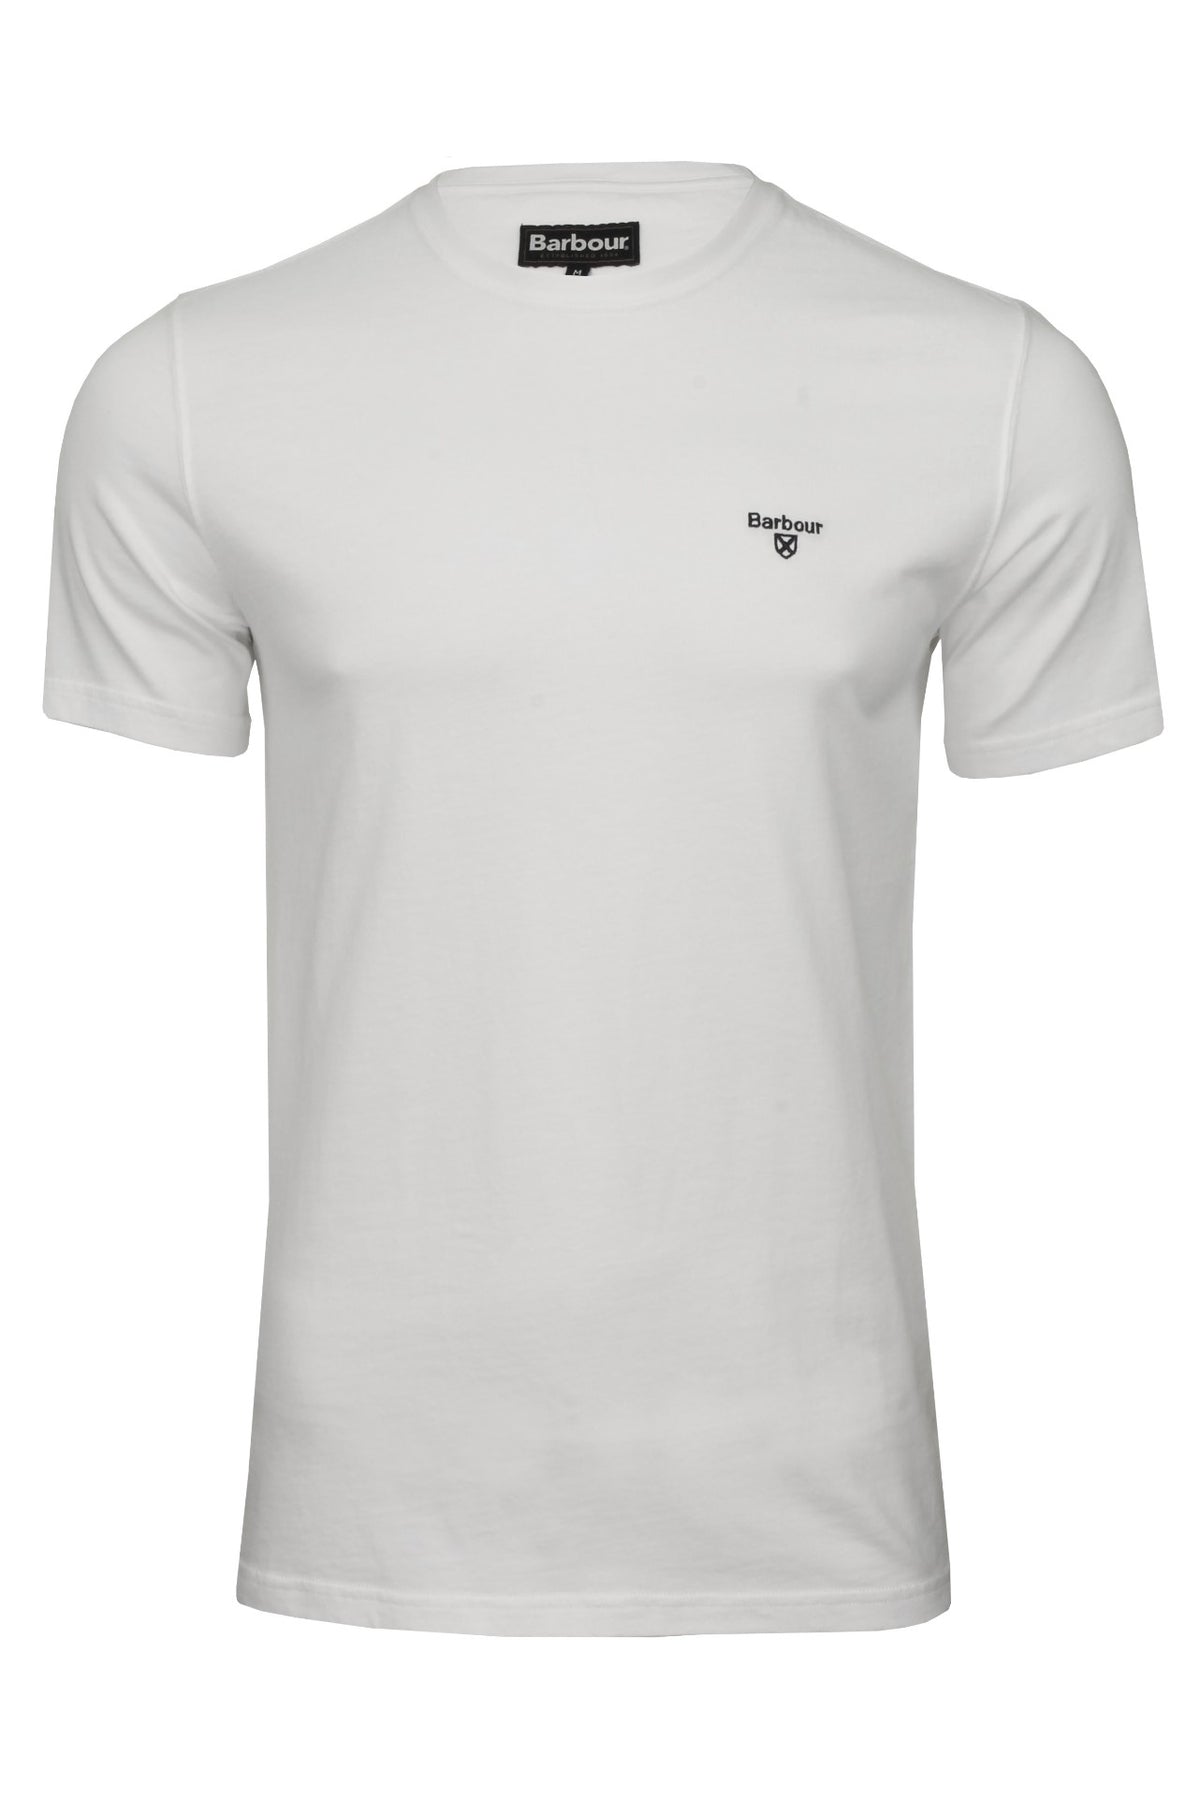 Barbour Men's Sports T-Shirt - Short Sleeved, 01, Mts0331, White